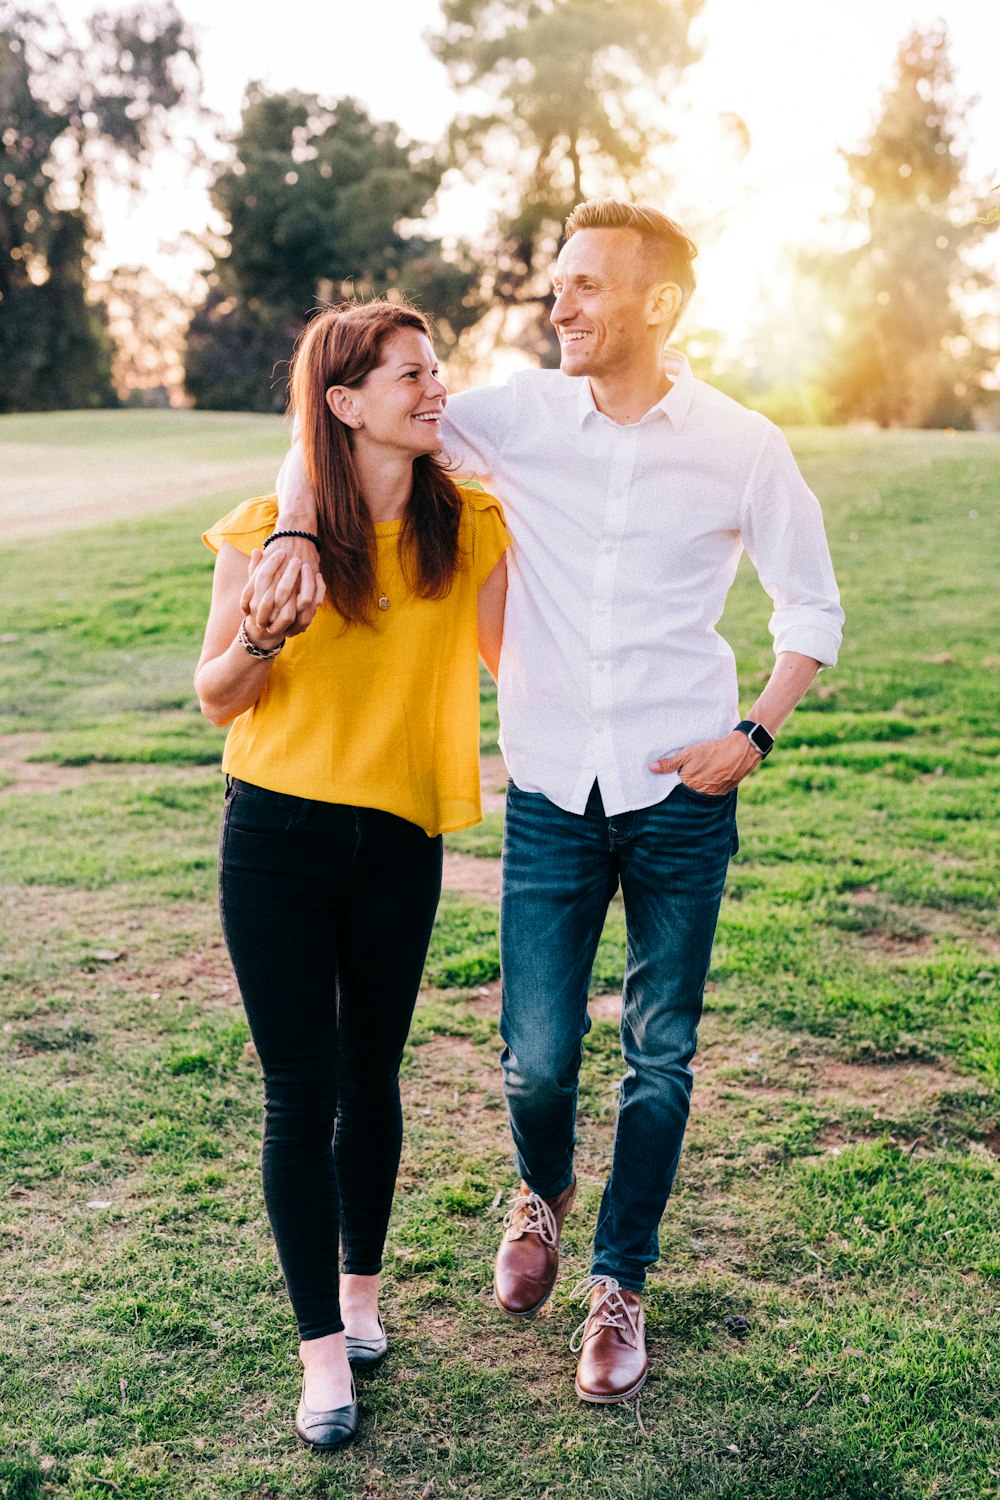 homem na camisa social branca e mulher na camisa laranja de manga comprida em pé na grama verde